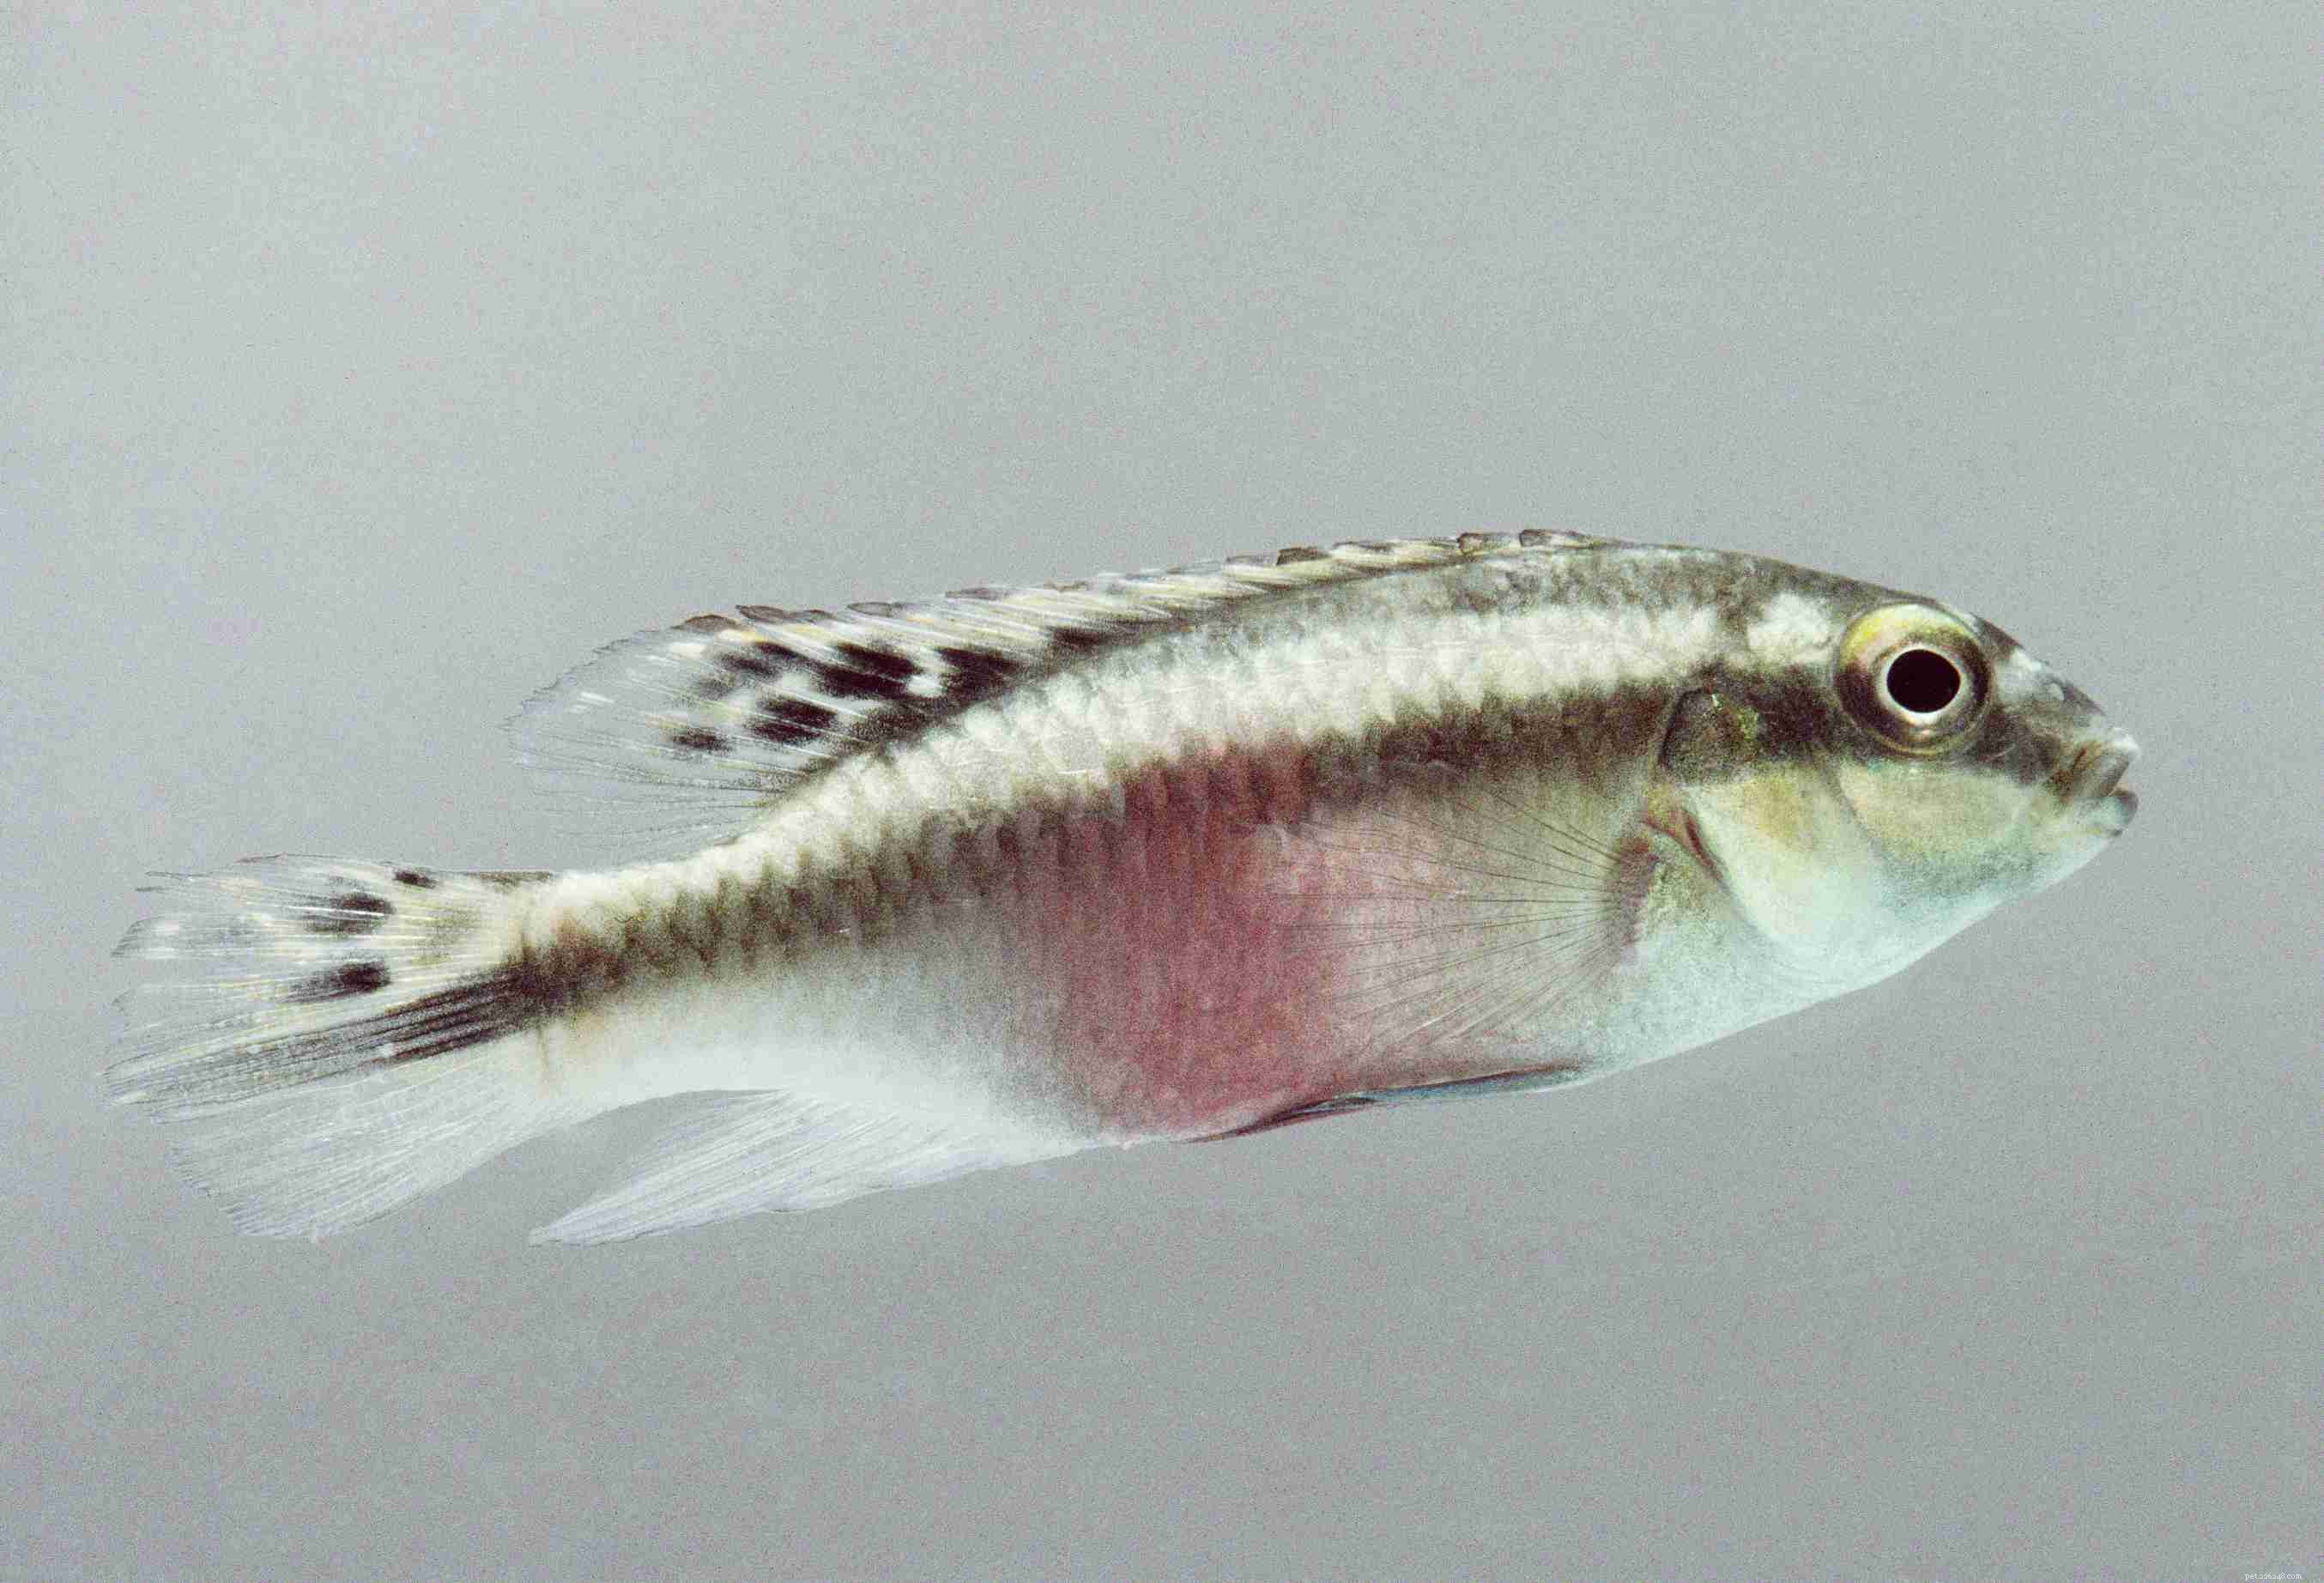 Liste utile des espèces de poissons d aquarium par nom commun